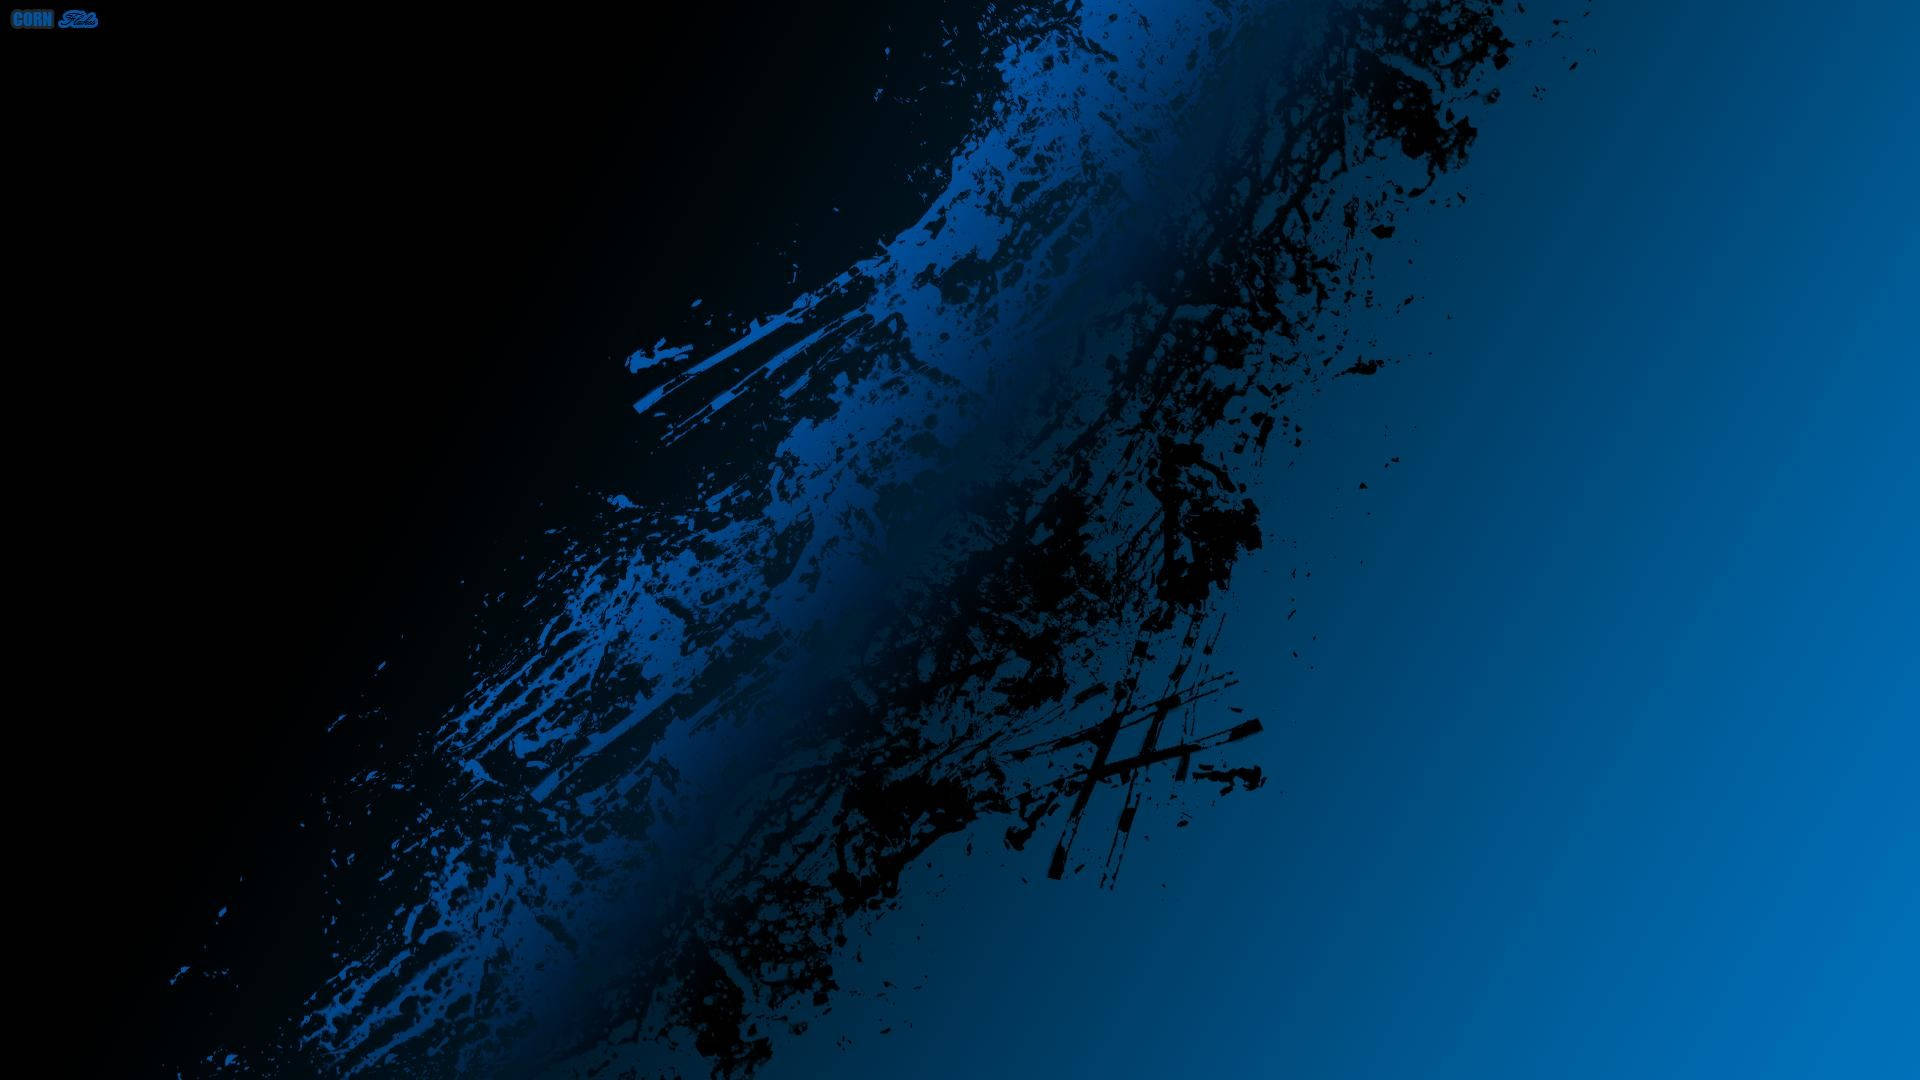 Schwarzund Blau Im Kontrast - 1080p Hd Desktop Wallpaper